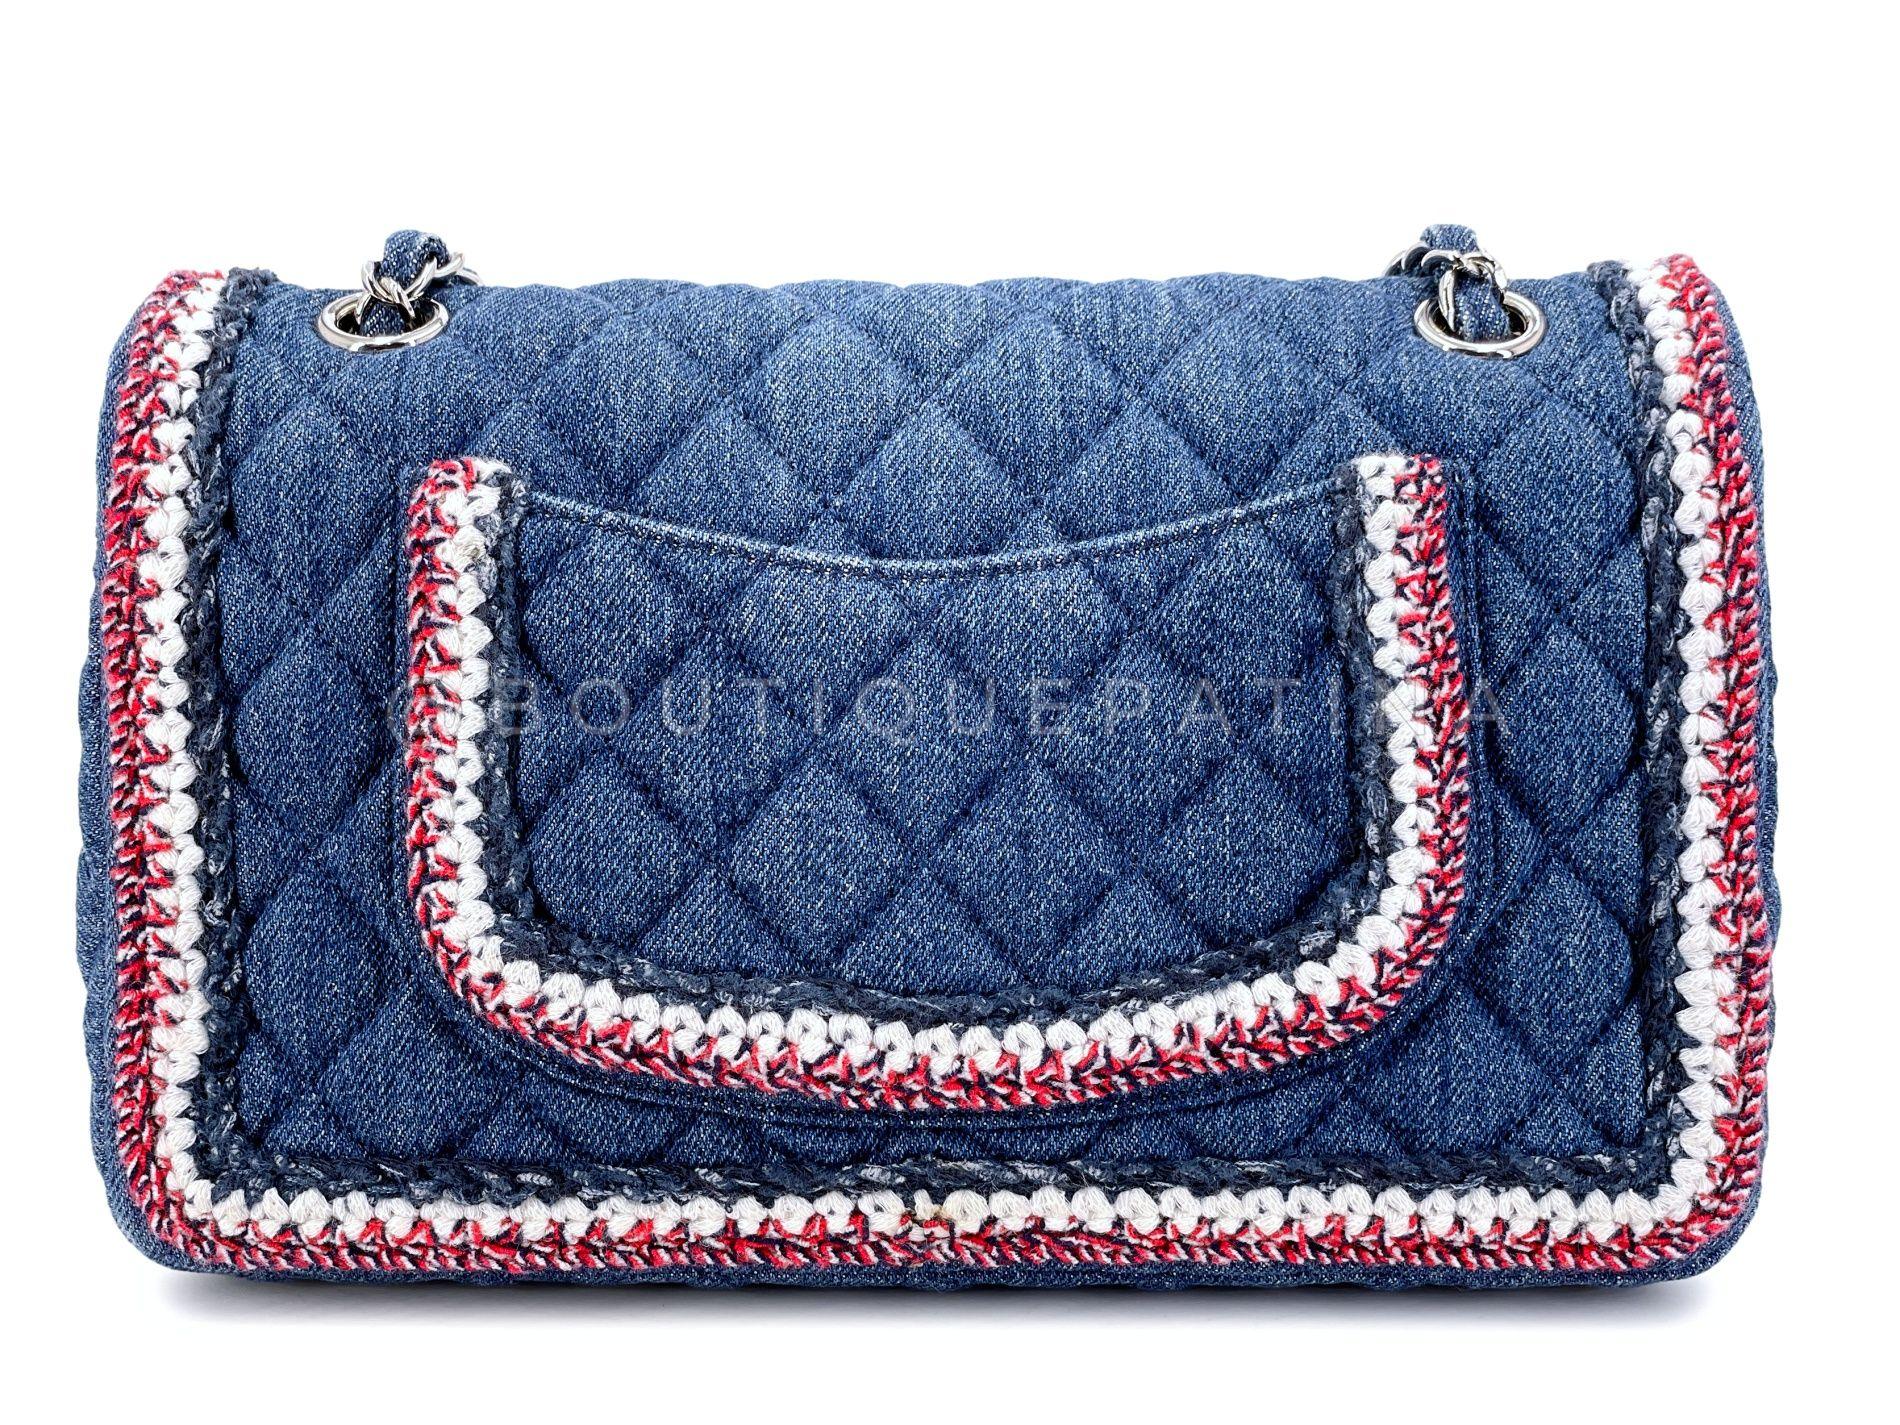 Chanel 2018 Framed Denim Medium Classic Flap Bag SHW 67966 For Sale 1